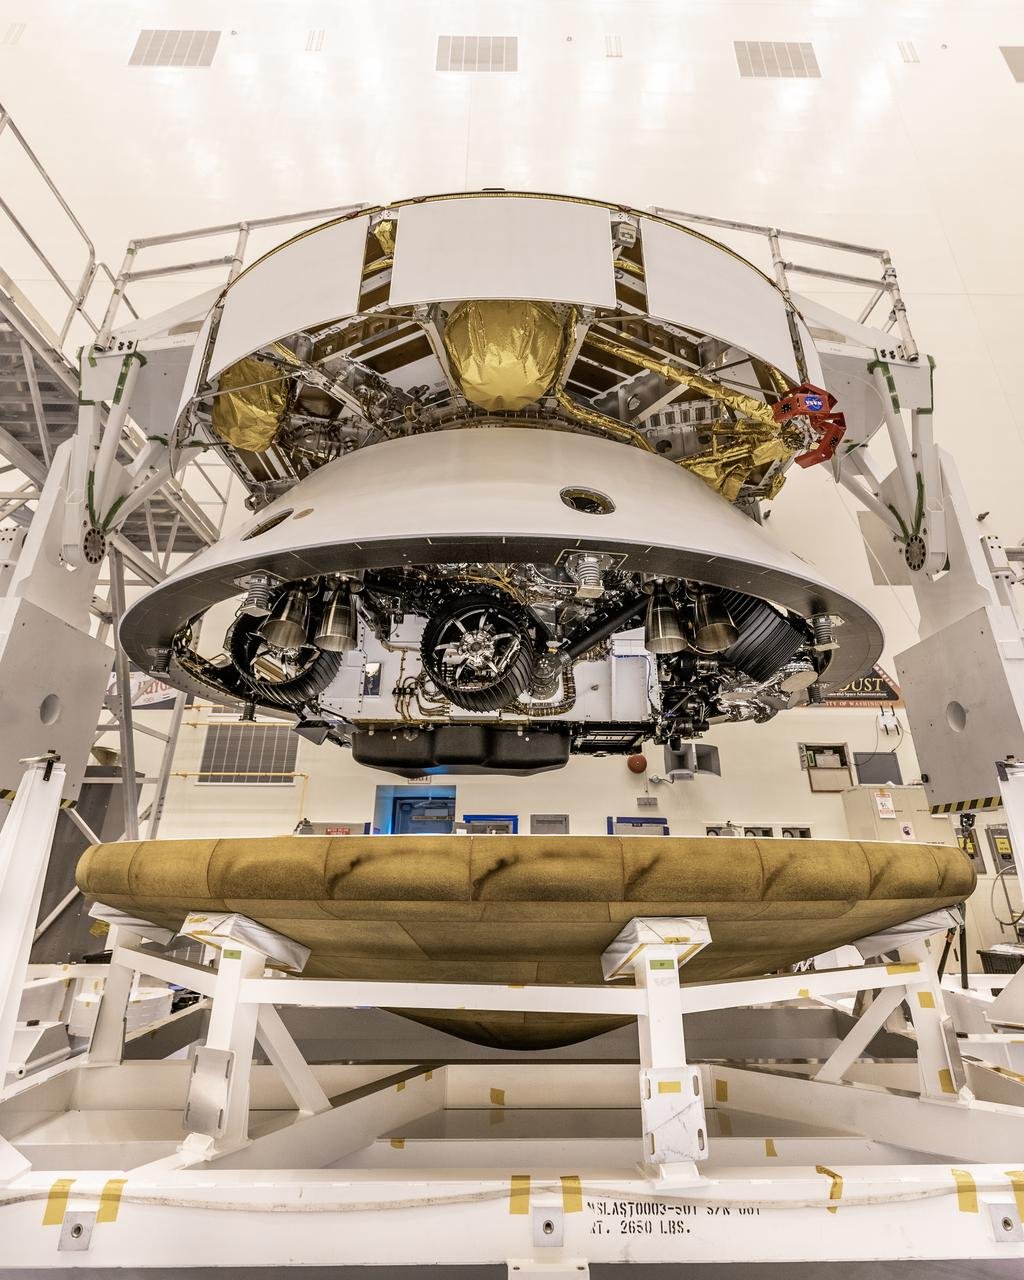 De haut en bas, tout ce qu'il fallait pour poser le rover : l'étage de croisière, la coque arrière avec les parachutes, la "skycrane" enserrant le rover replié dans ses bras, et le bouclier dessous. Crédits NASA